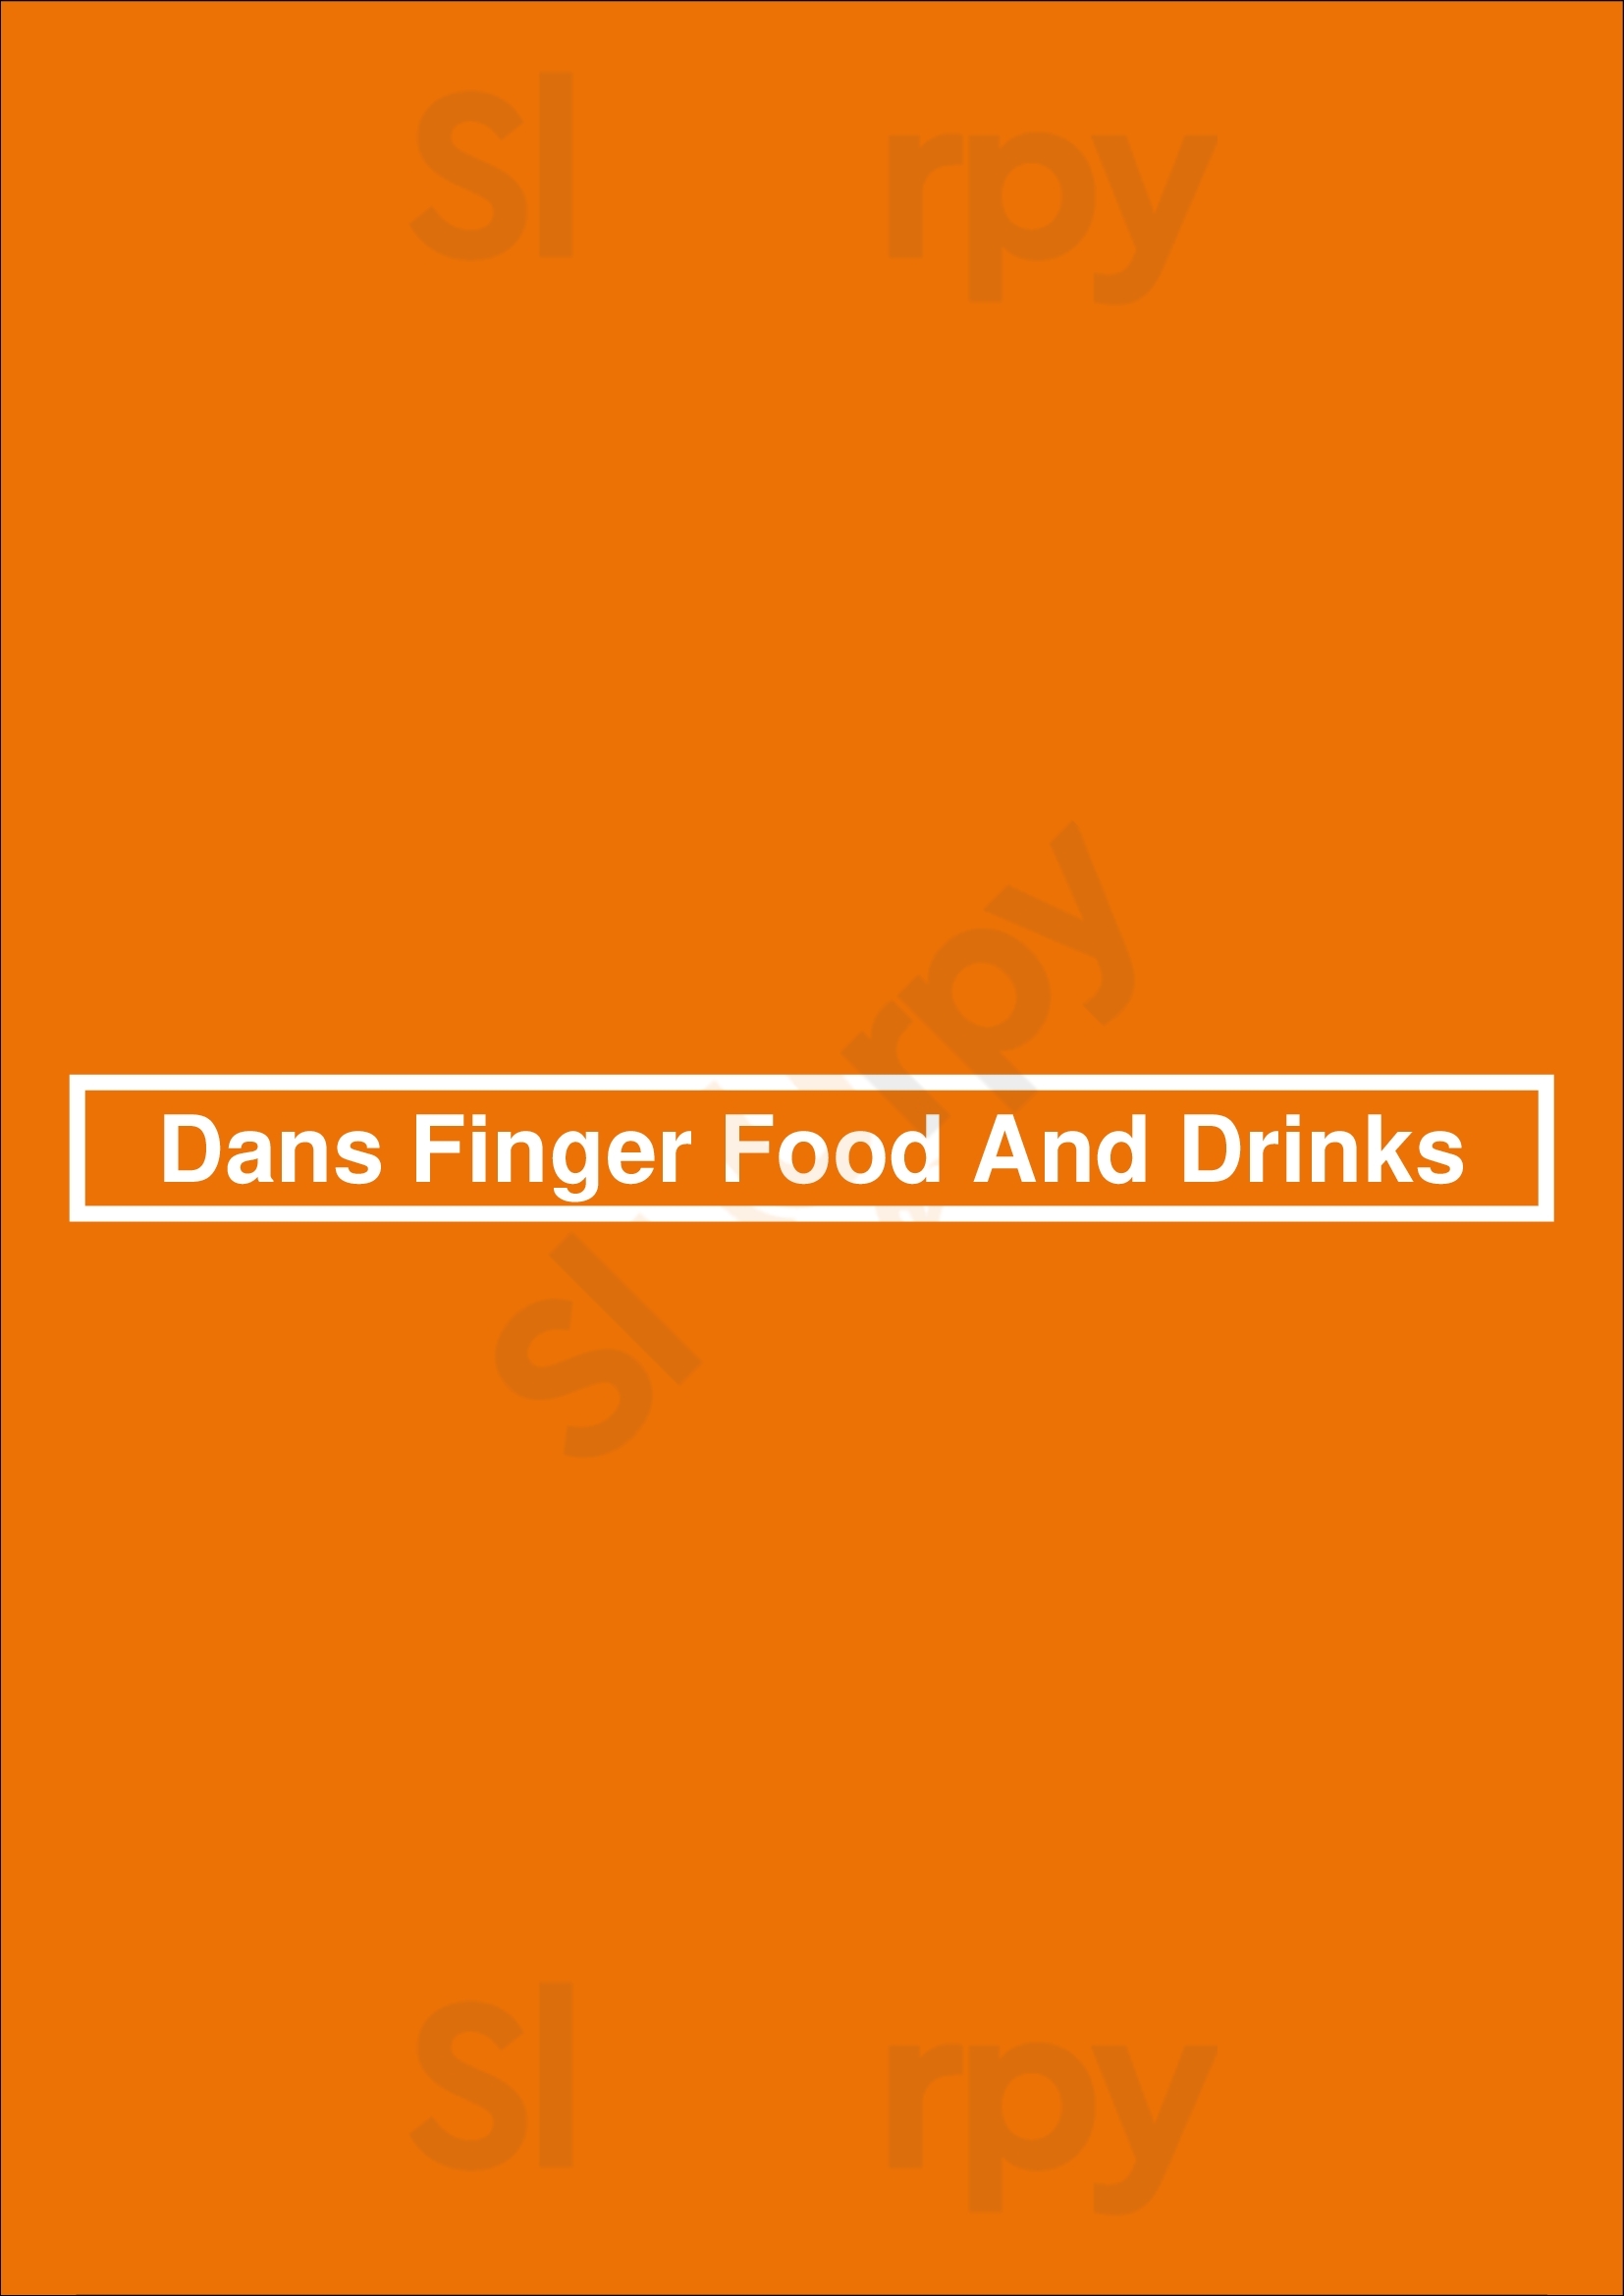 Dans Finger Food And Drinks Porto Menu - 1